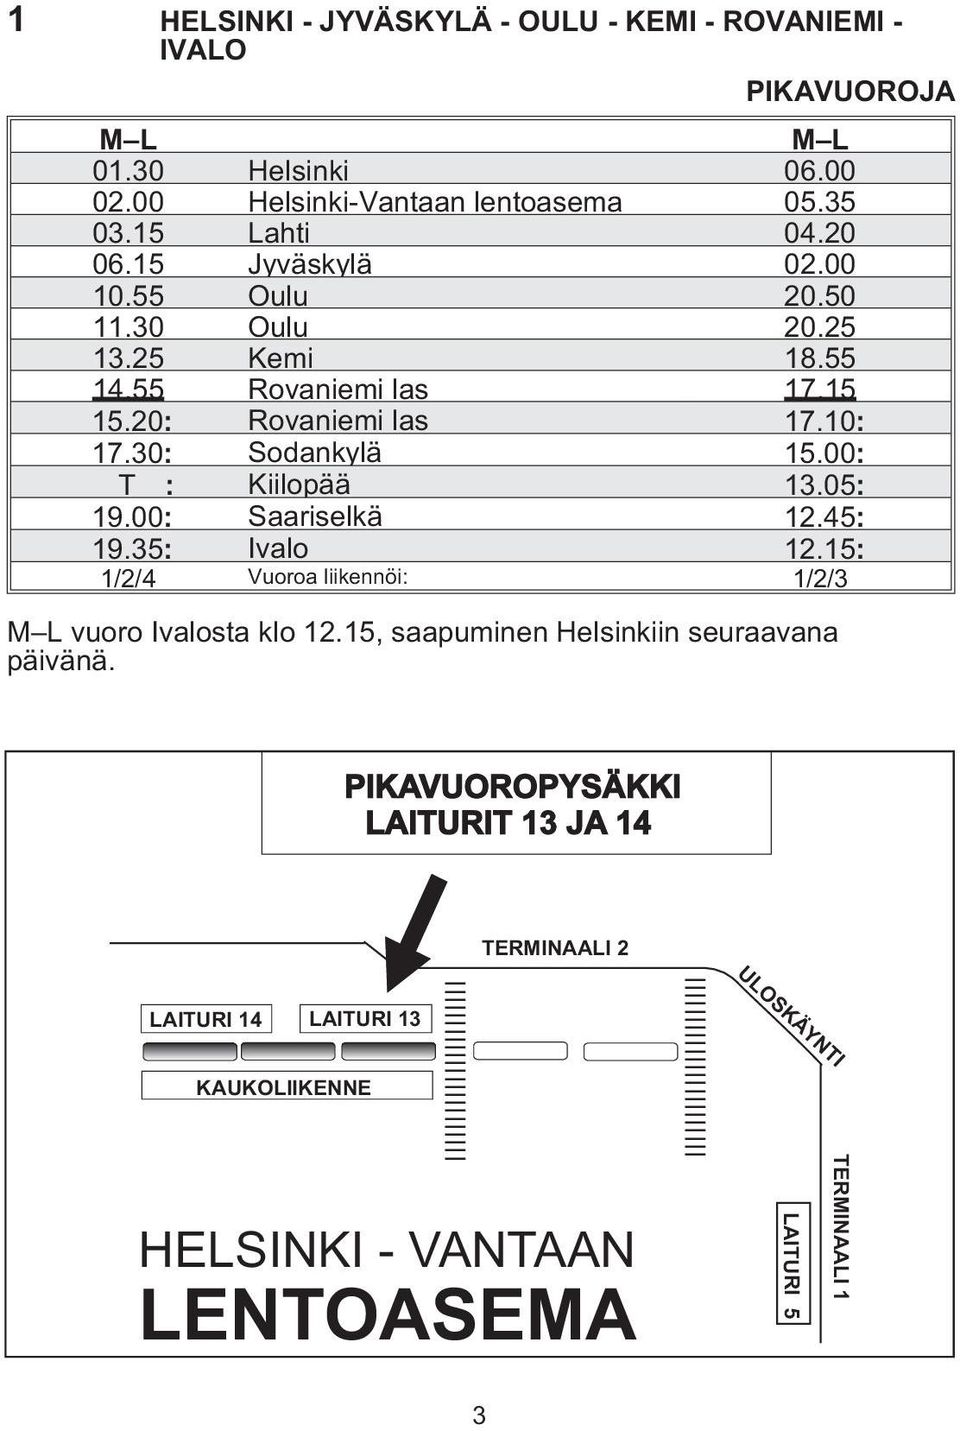 15 15.20: Rovaniemi las 17.10: 17.30: Sodankylä 15.00: T : Kiilopää 13.05: 19.00: Saariselkä 12.45: 19.35: Ivalo 12.